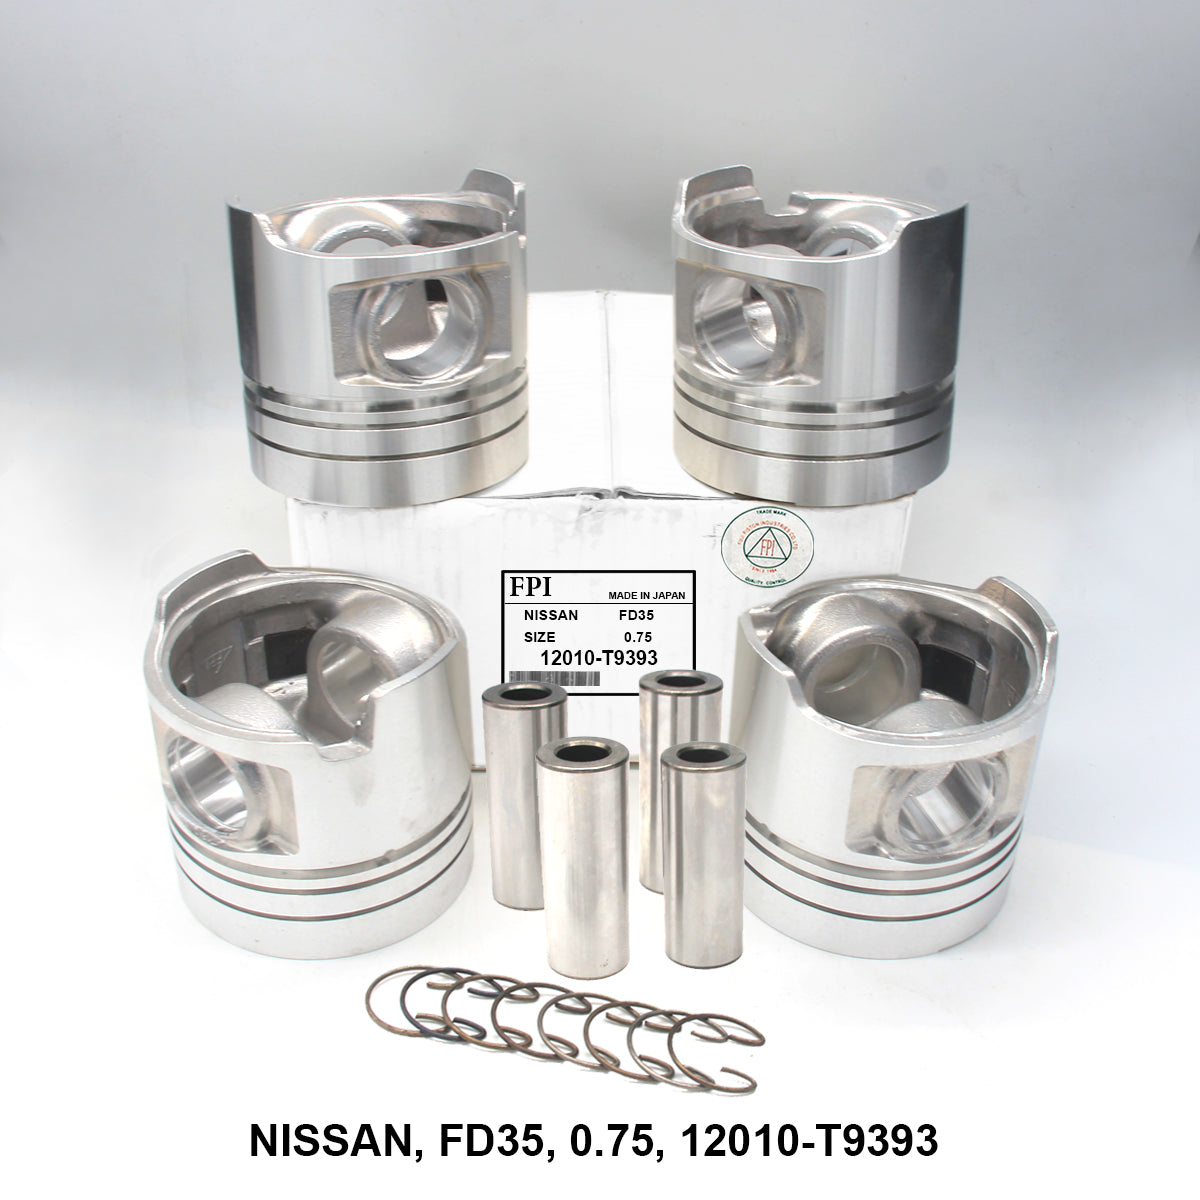 Piston W/Pin, FPI, FD35, 0.75, 12010-T9393 (001663)